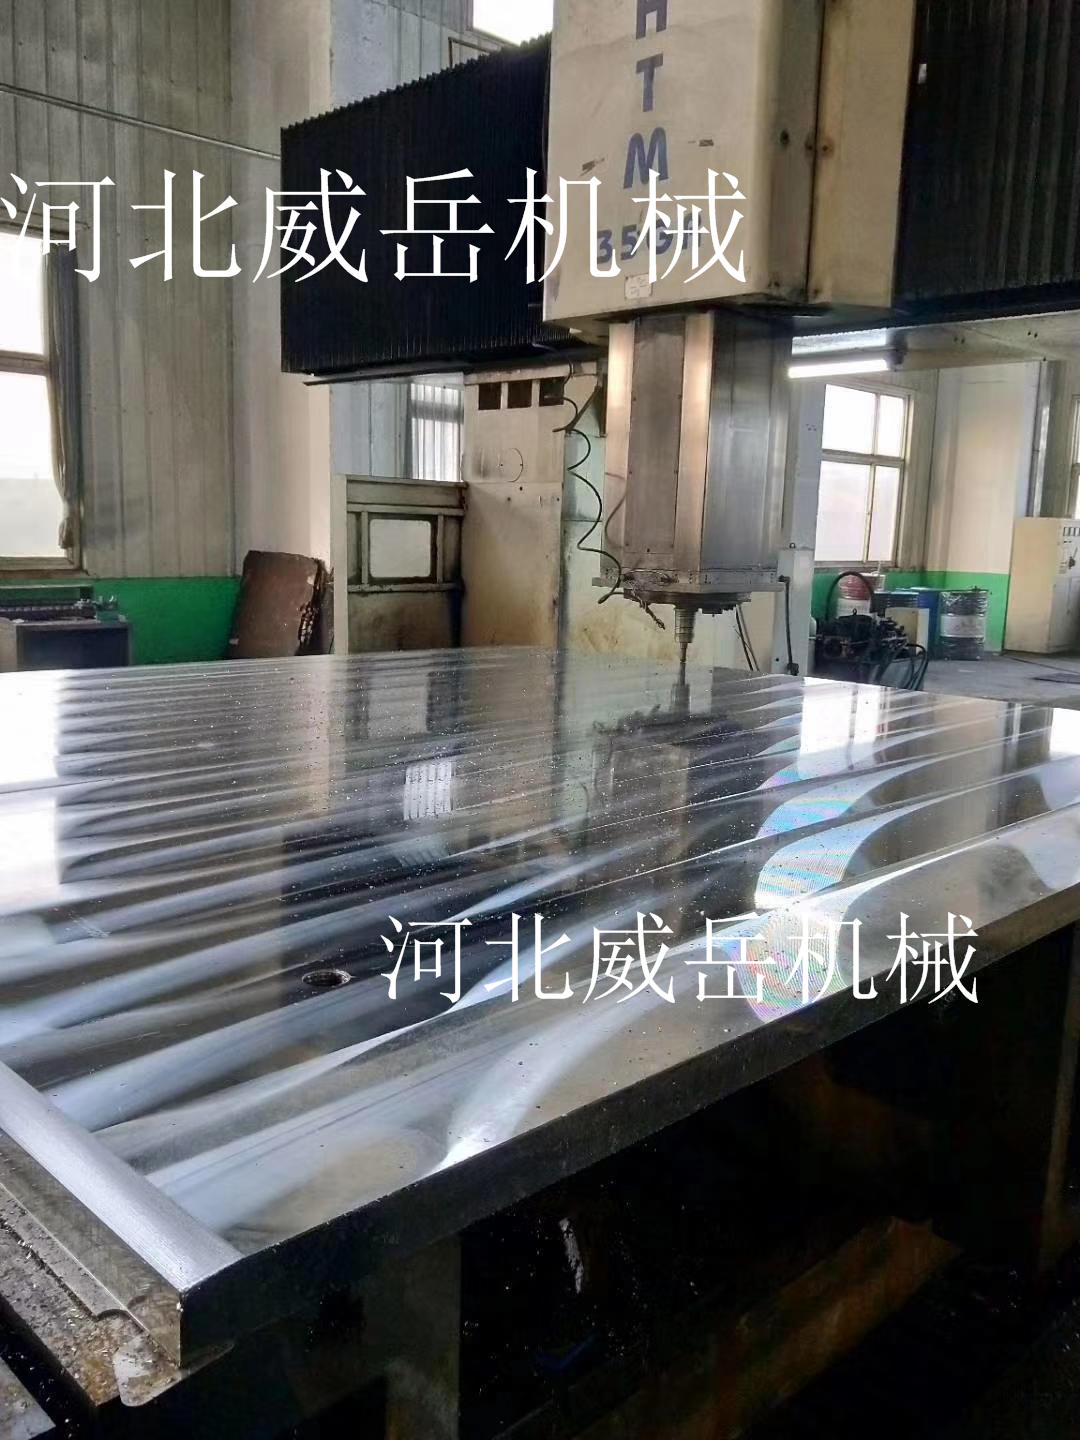 长期售铸铁平台平板厂商供应铸铁平板走单处理价